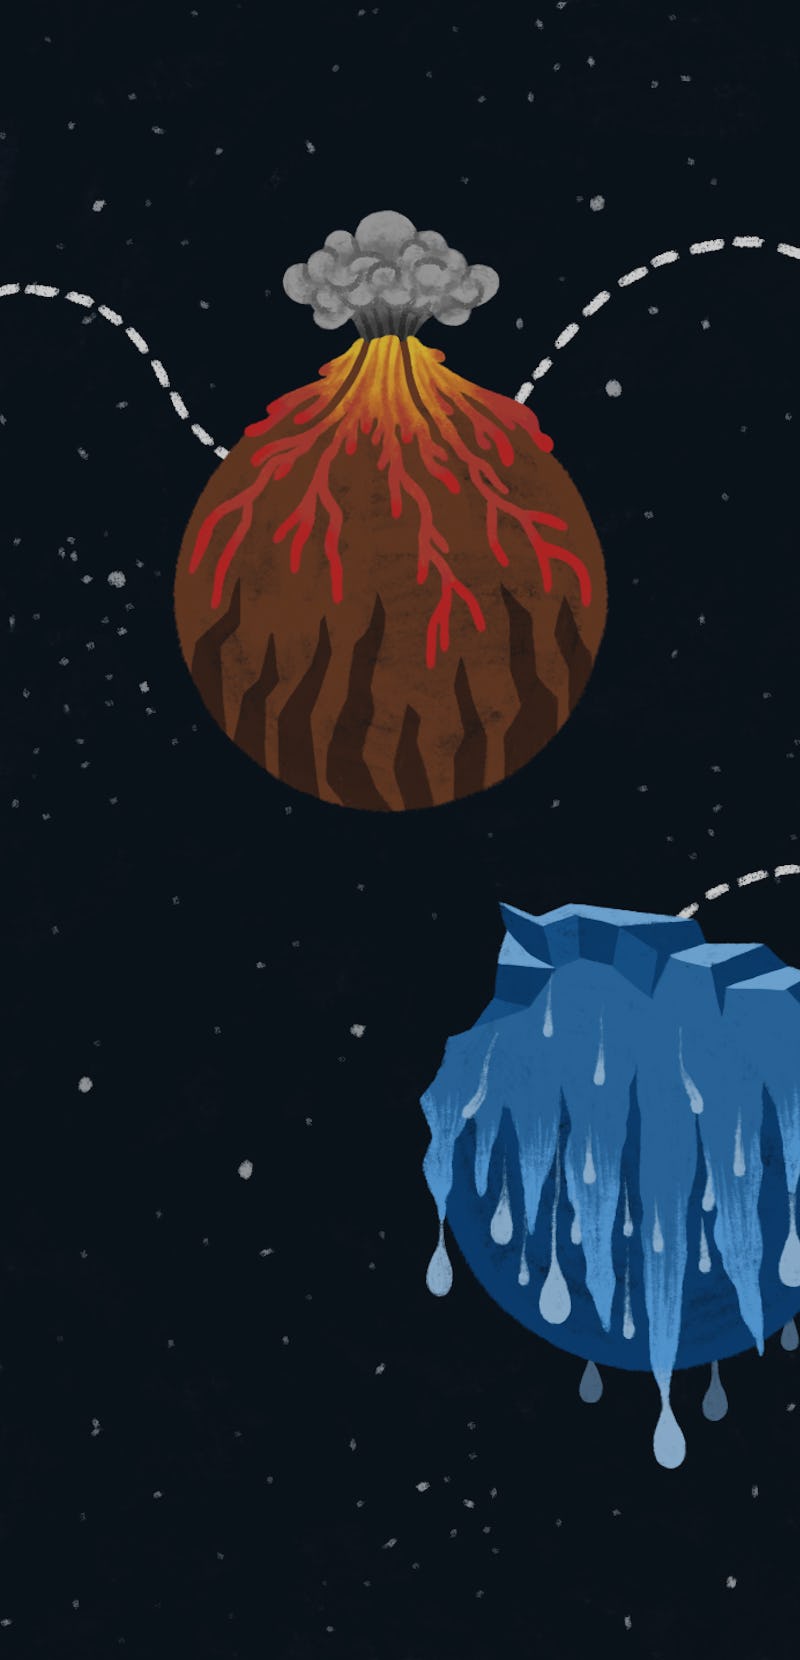 Future Earth volcano illustration